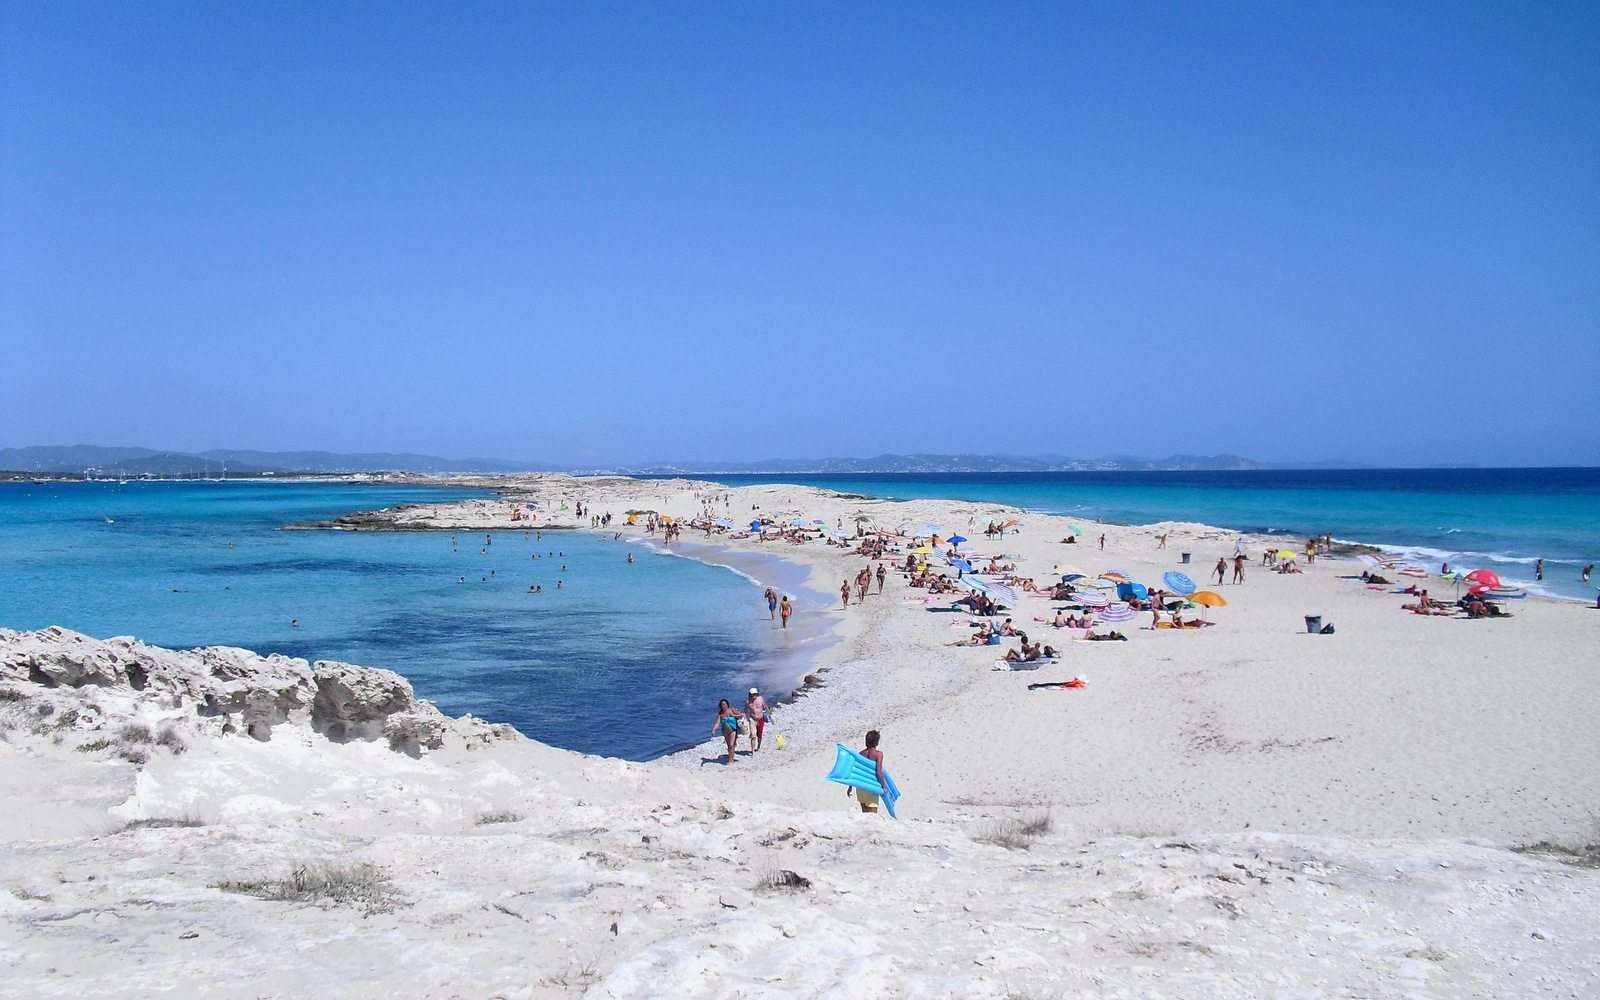 Playa de Ses Illetes, Formentera Fotografía por Rickypi, cedida por Minube para su árticulo en EFEverde